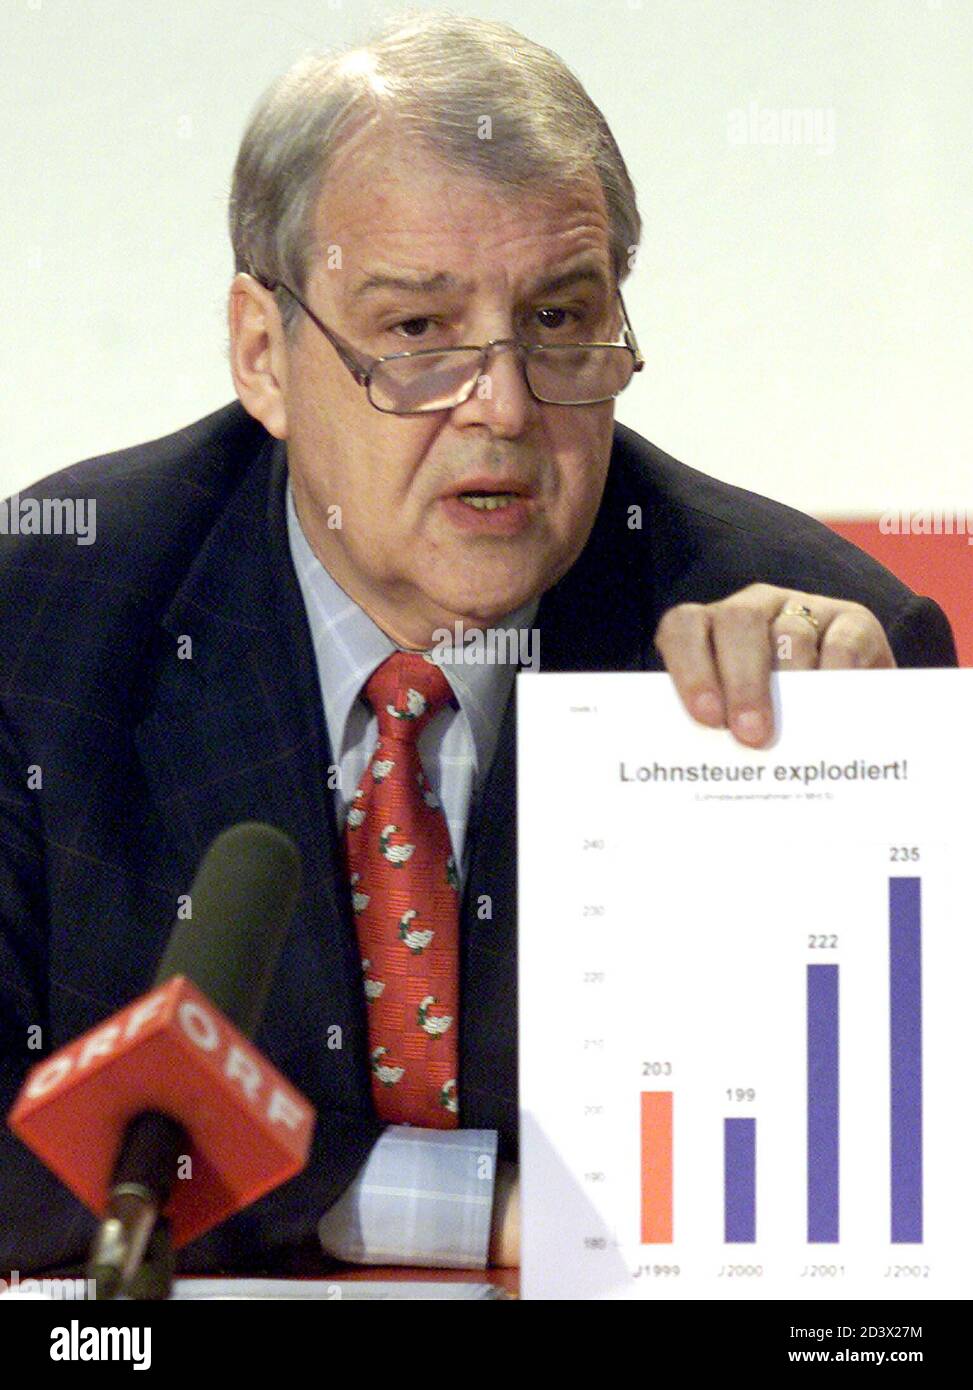 Der Finanzsprecher der SPOe Rudolf Edlinger gab am Freitag, dem 9.Maerz 2001, eine Pressekonfernz zum Thema Budget. Edlinger forderte fuer 2002 erneut eine Lohnsteuersenkung um 15 Mrd.S, um die Mehreinnahmen des Jahres 2000 an die Bevoelkerung zurueckzugeben.  LF/ Stock Photo